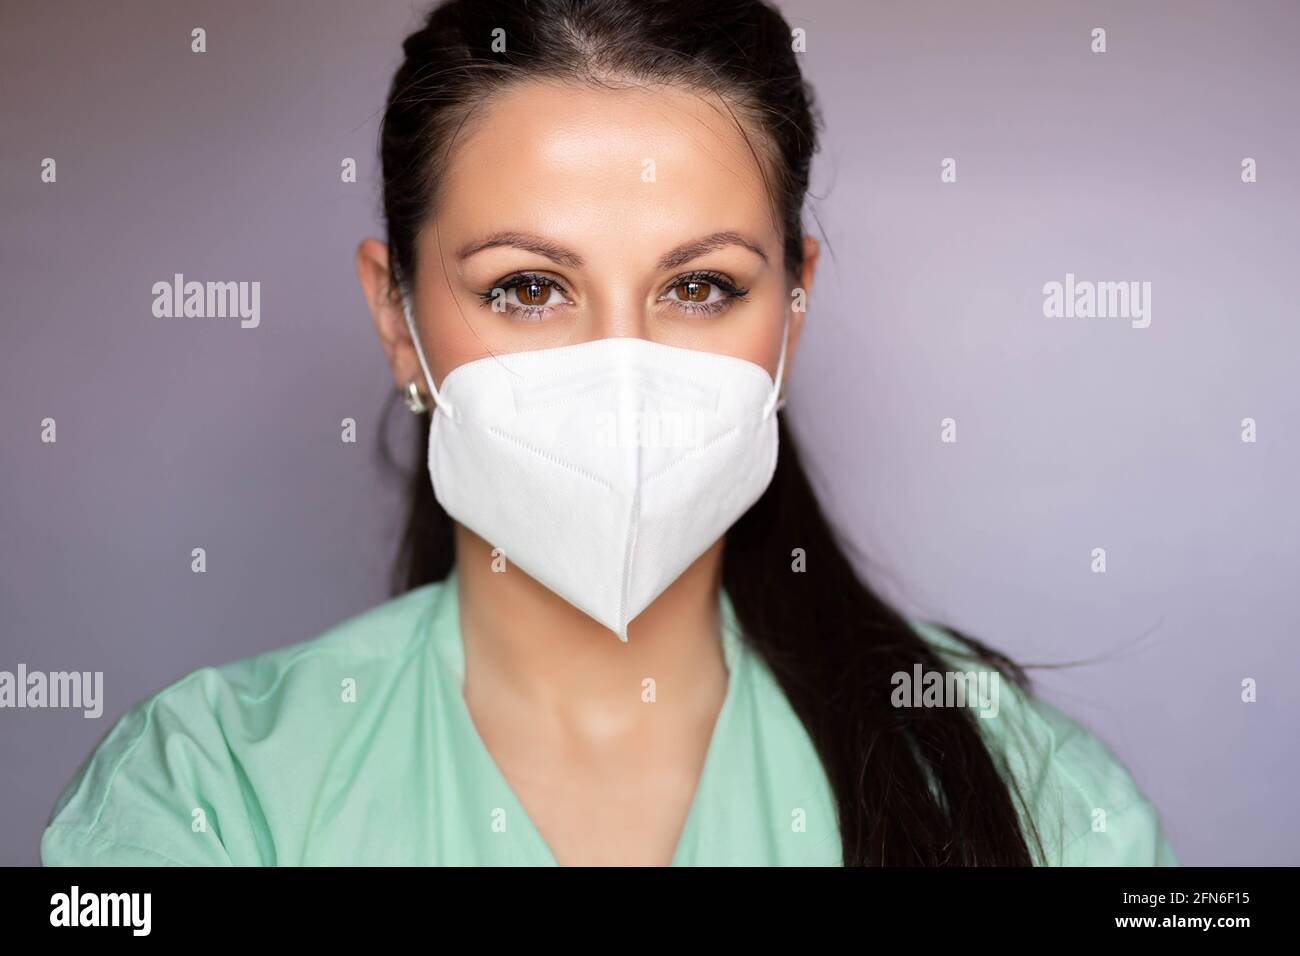 Jeune professionnel de la santé, infirmière avec masque de protection. Isolé sur fond gris Banque D'Images